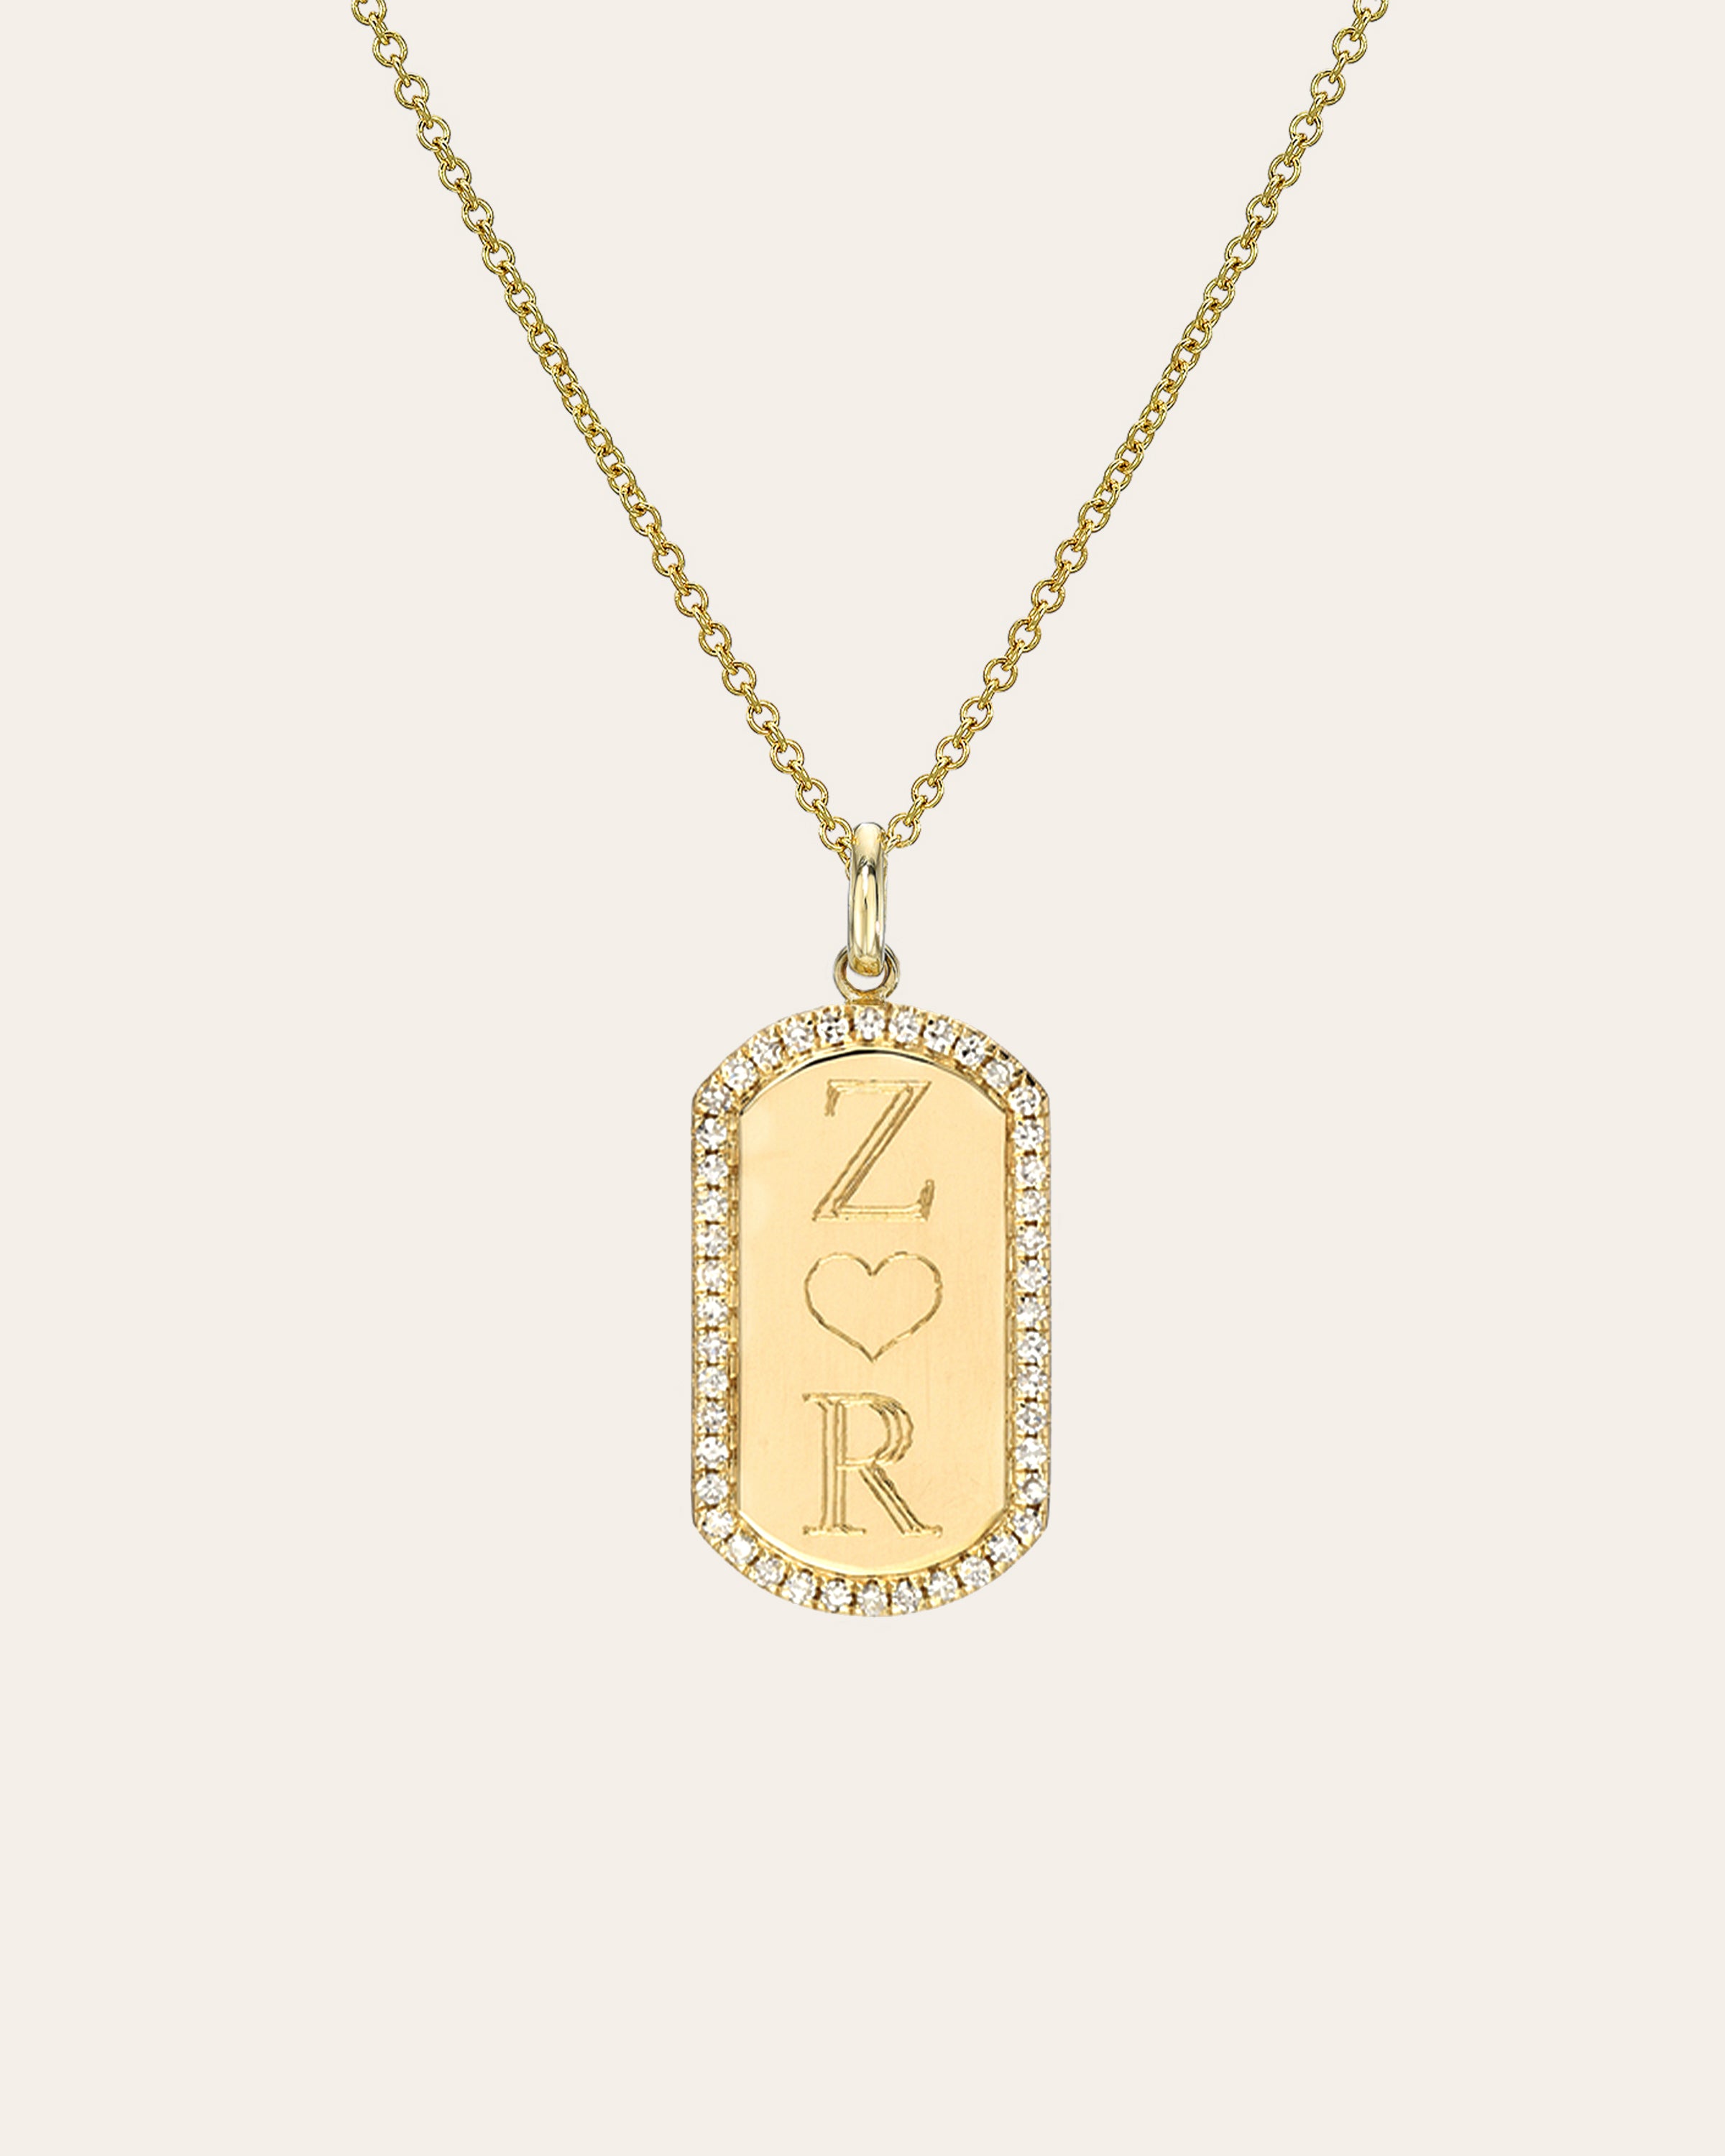 Diamond Name Dog Tag Necklace 14K White Gold 18